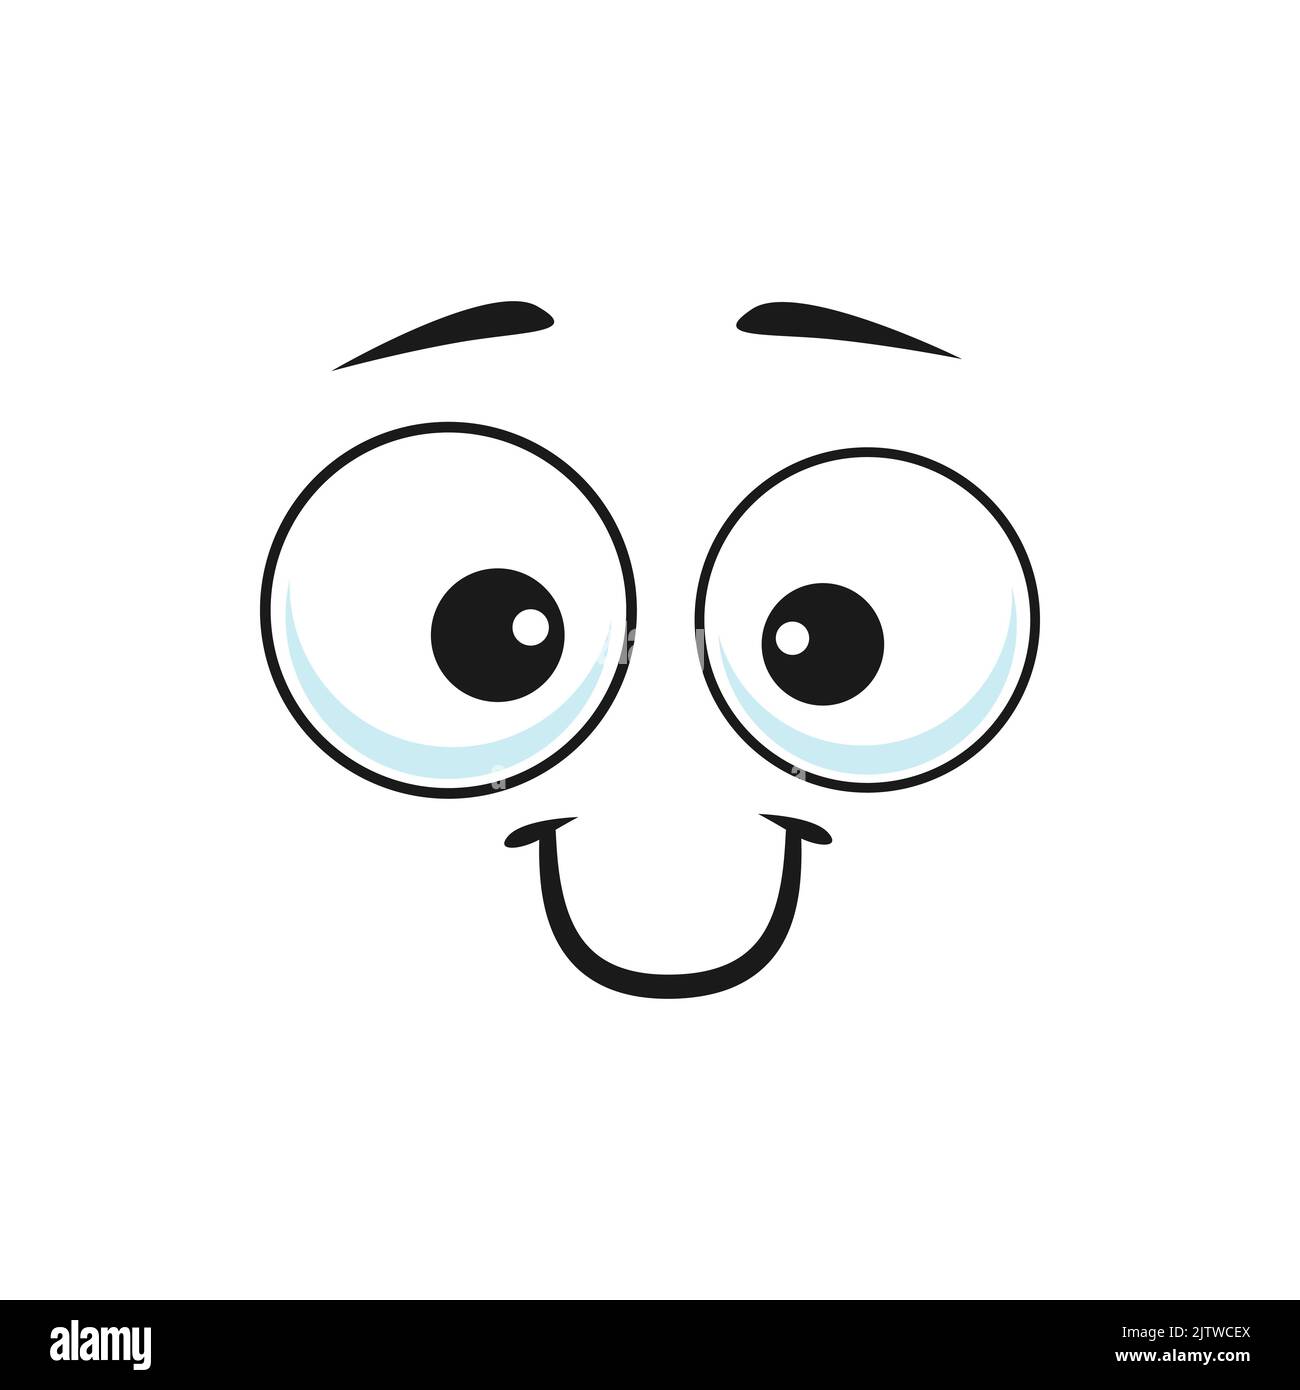 Cartone animato sorridente faccia vettore divertente emoji con amichevole scenario sorriso e gli occhi rotondi. Felice espressione facciale, sentimenti positivi isolati su sfondo bianco Illustrazione Vettoriale